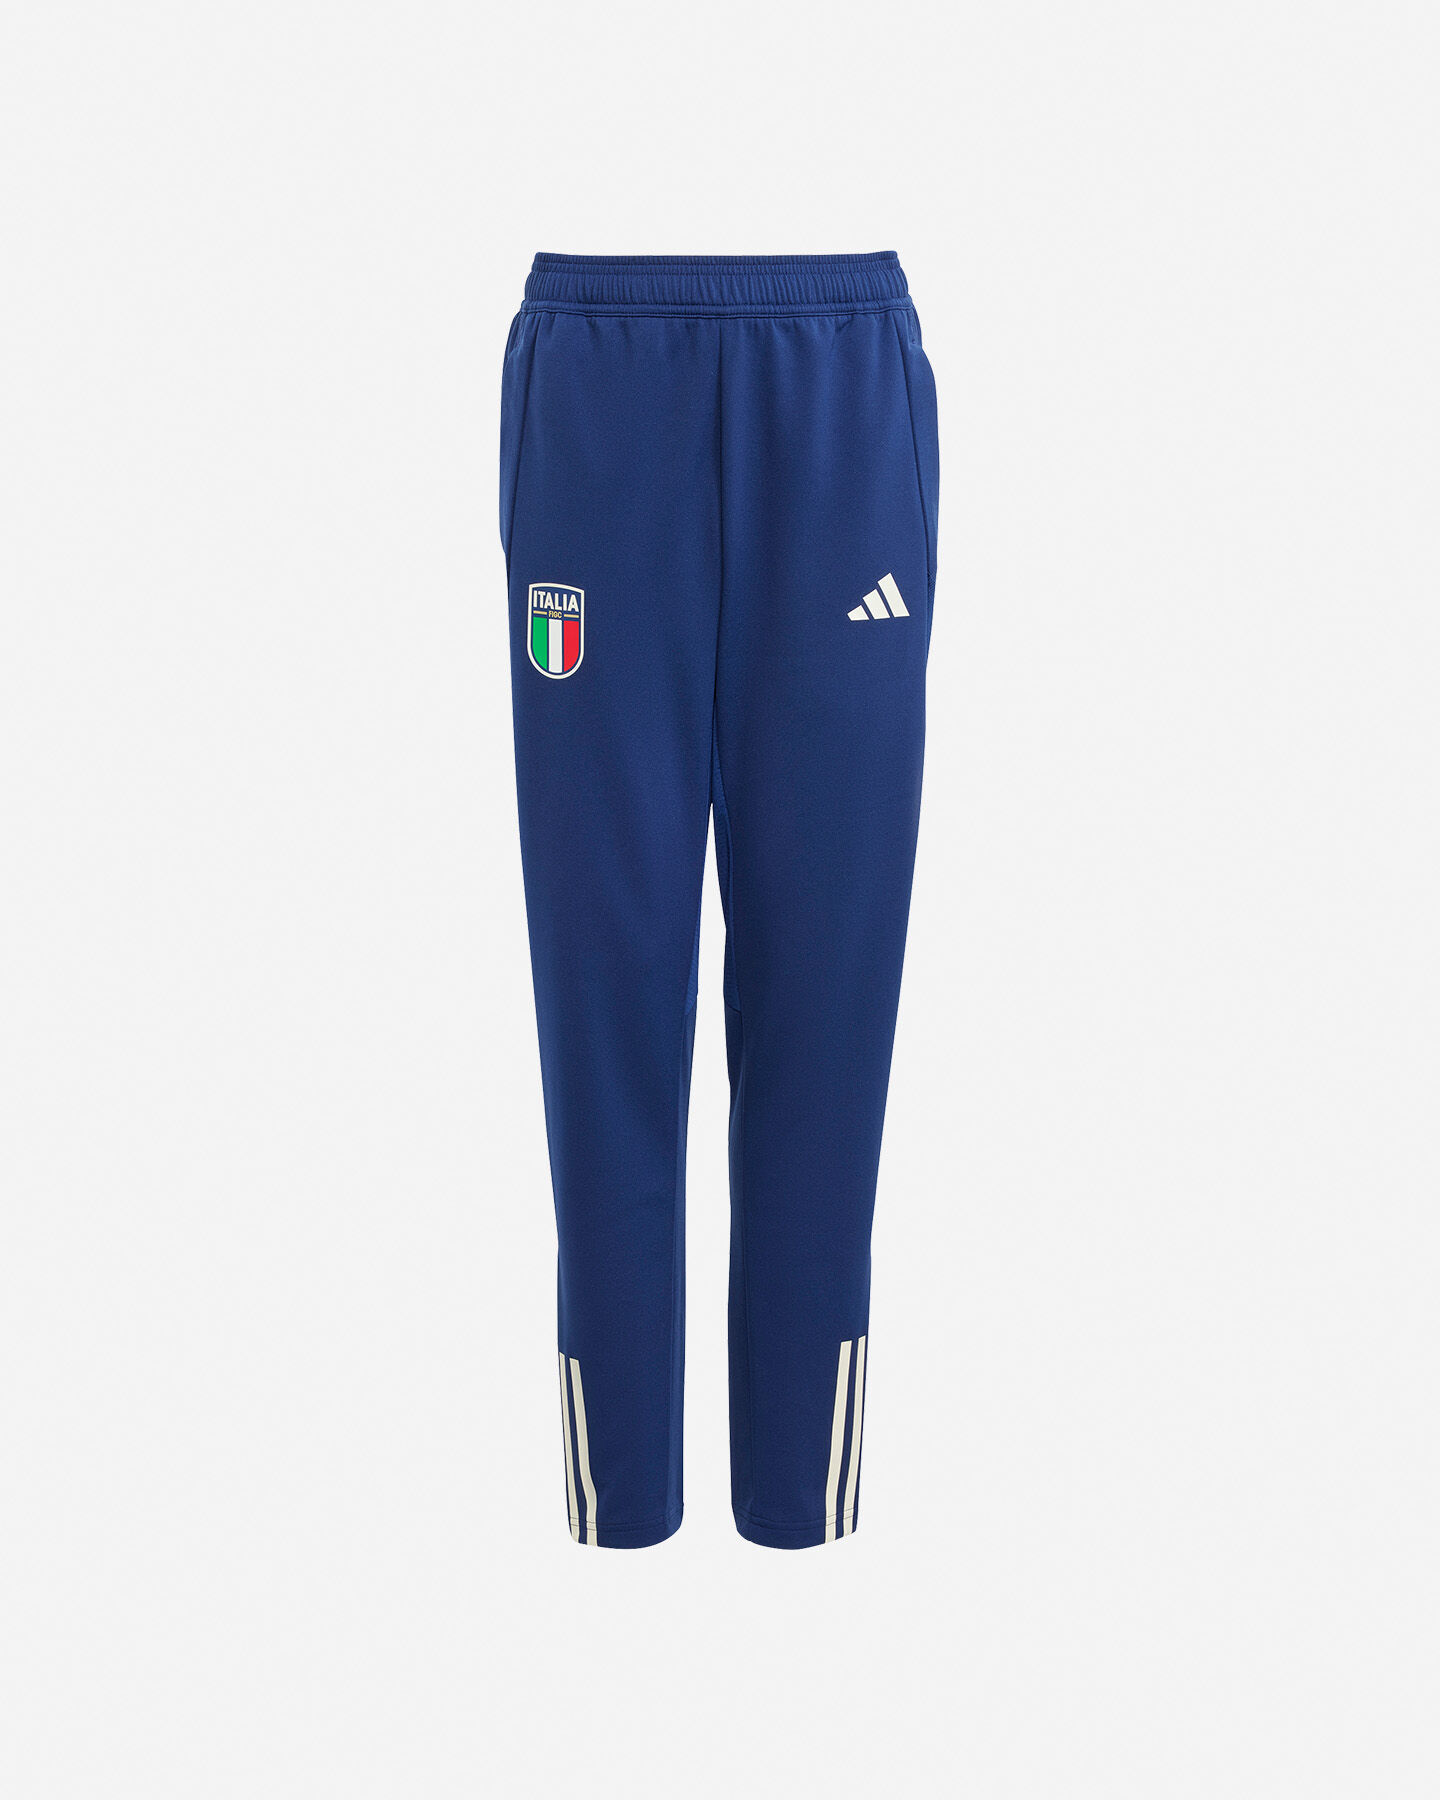  Abbigliamento calcio ADIDAS ITALIA TRAINING JR S5542901 scatto 0